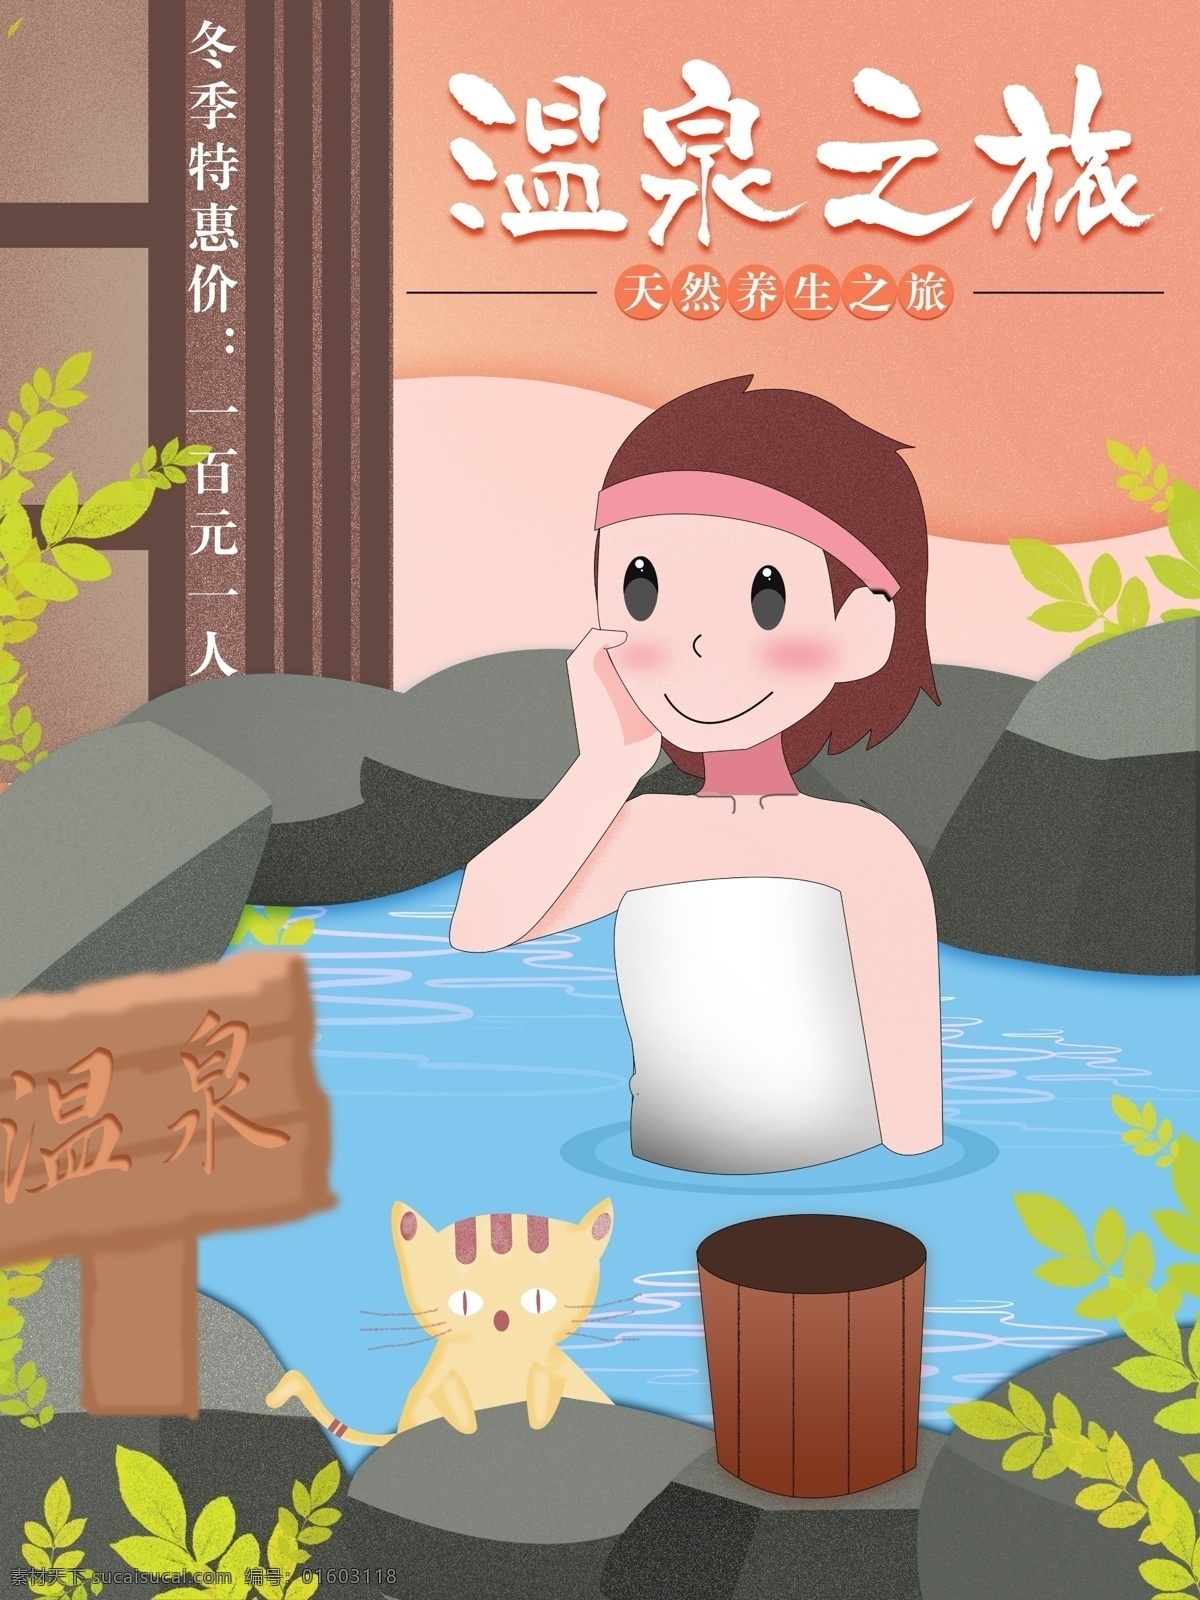 原创 手绘 温泉 之旅 促销 海报 旅游 女孩 猫 优惠 温泉之旅 特惠